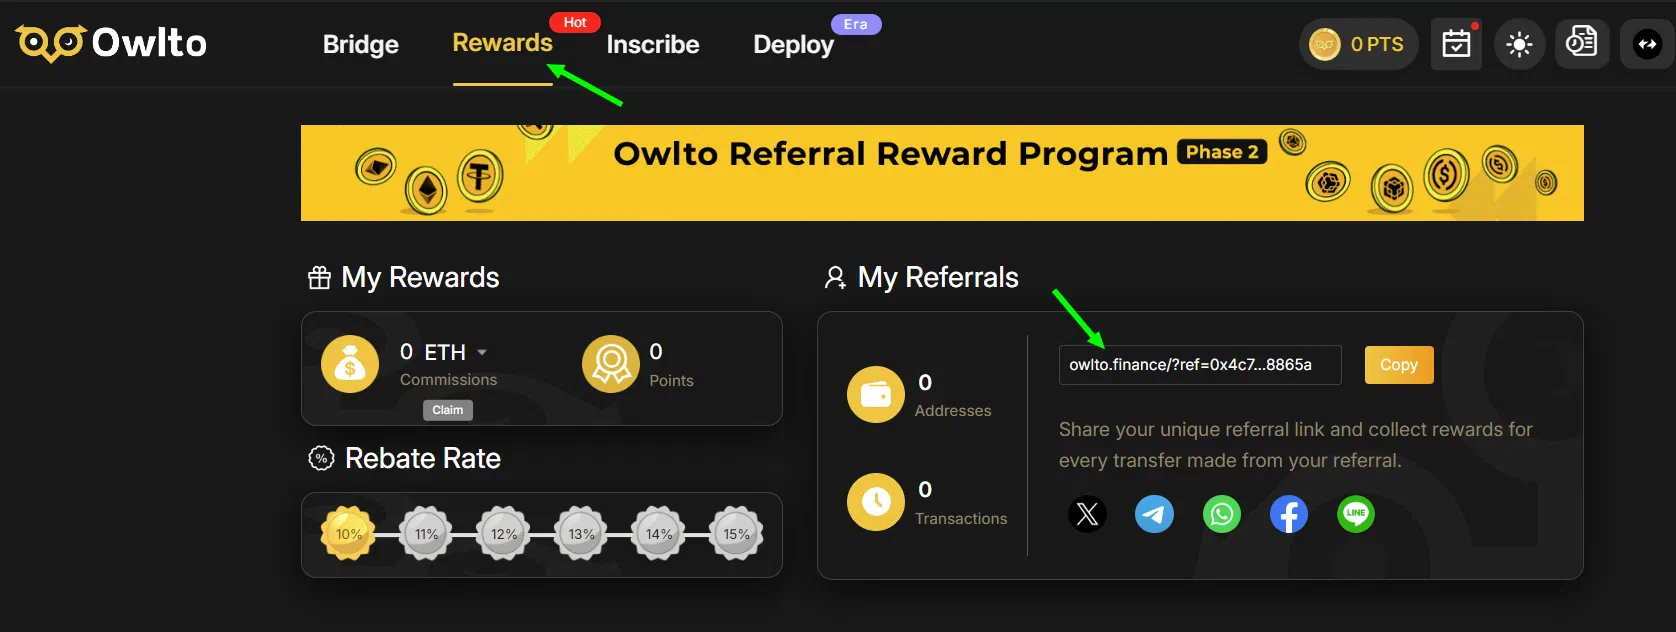 les différentes récompenses possibles avec l’affiliation owlto